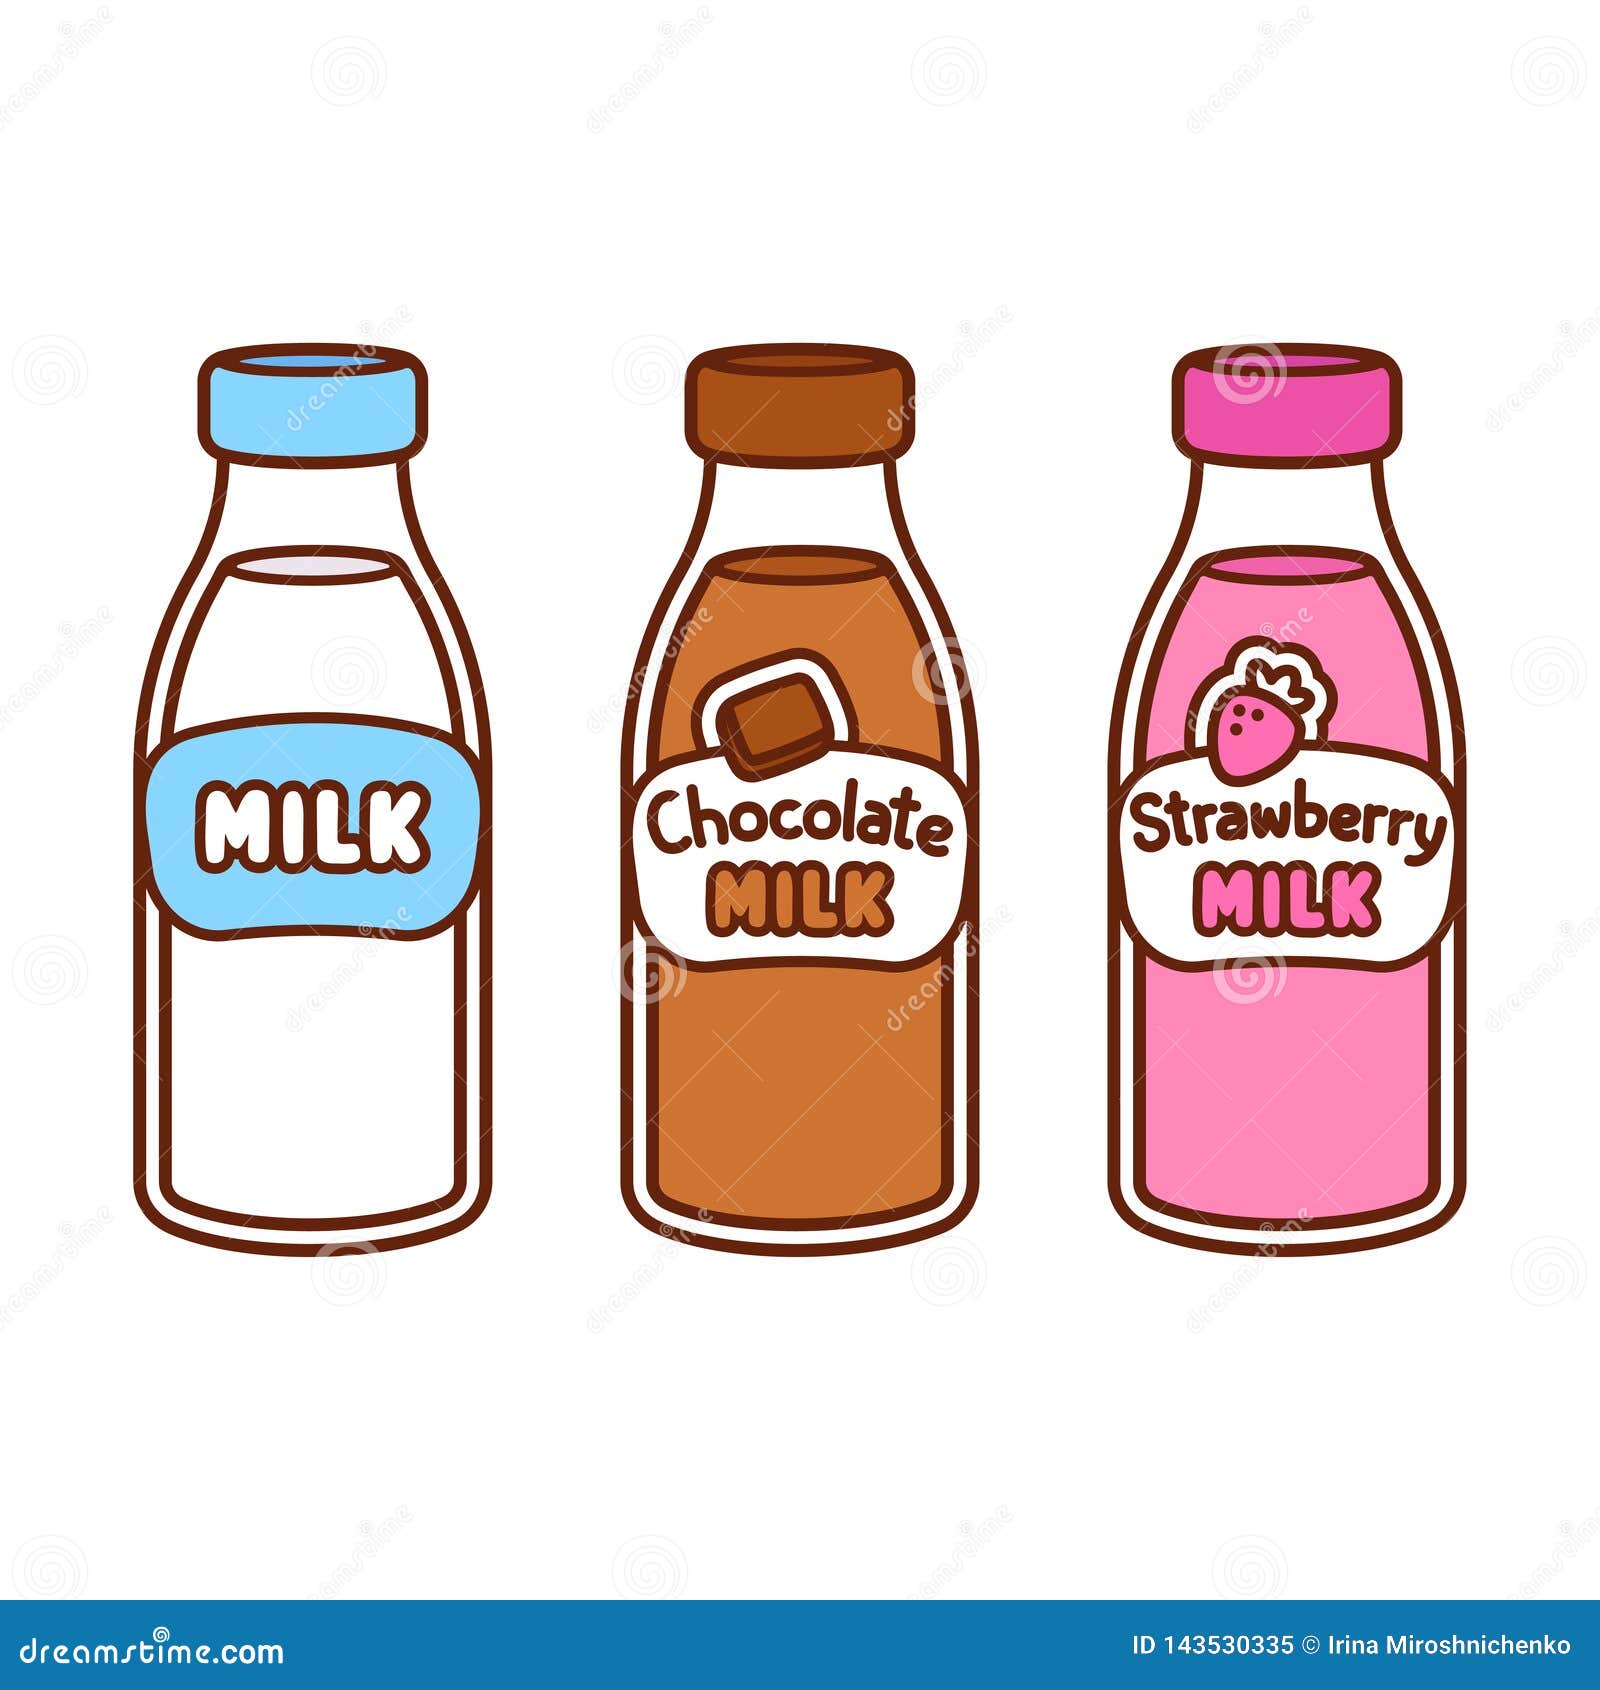 Cartoon milk bottles stock vector. Illustration of natural - 143530335